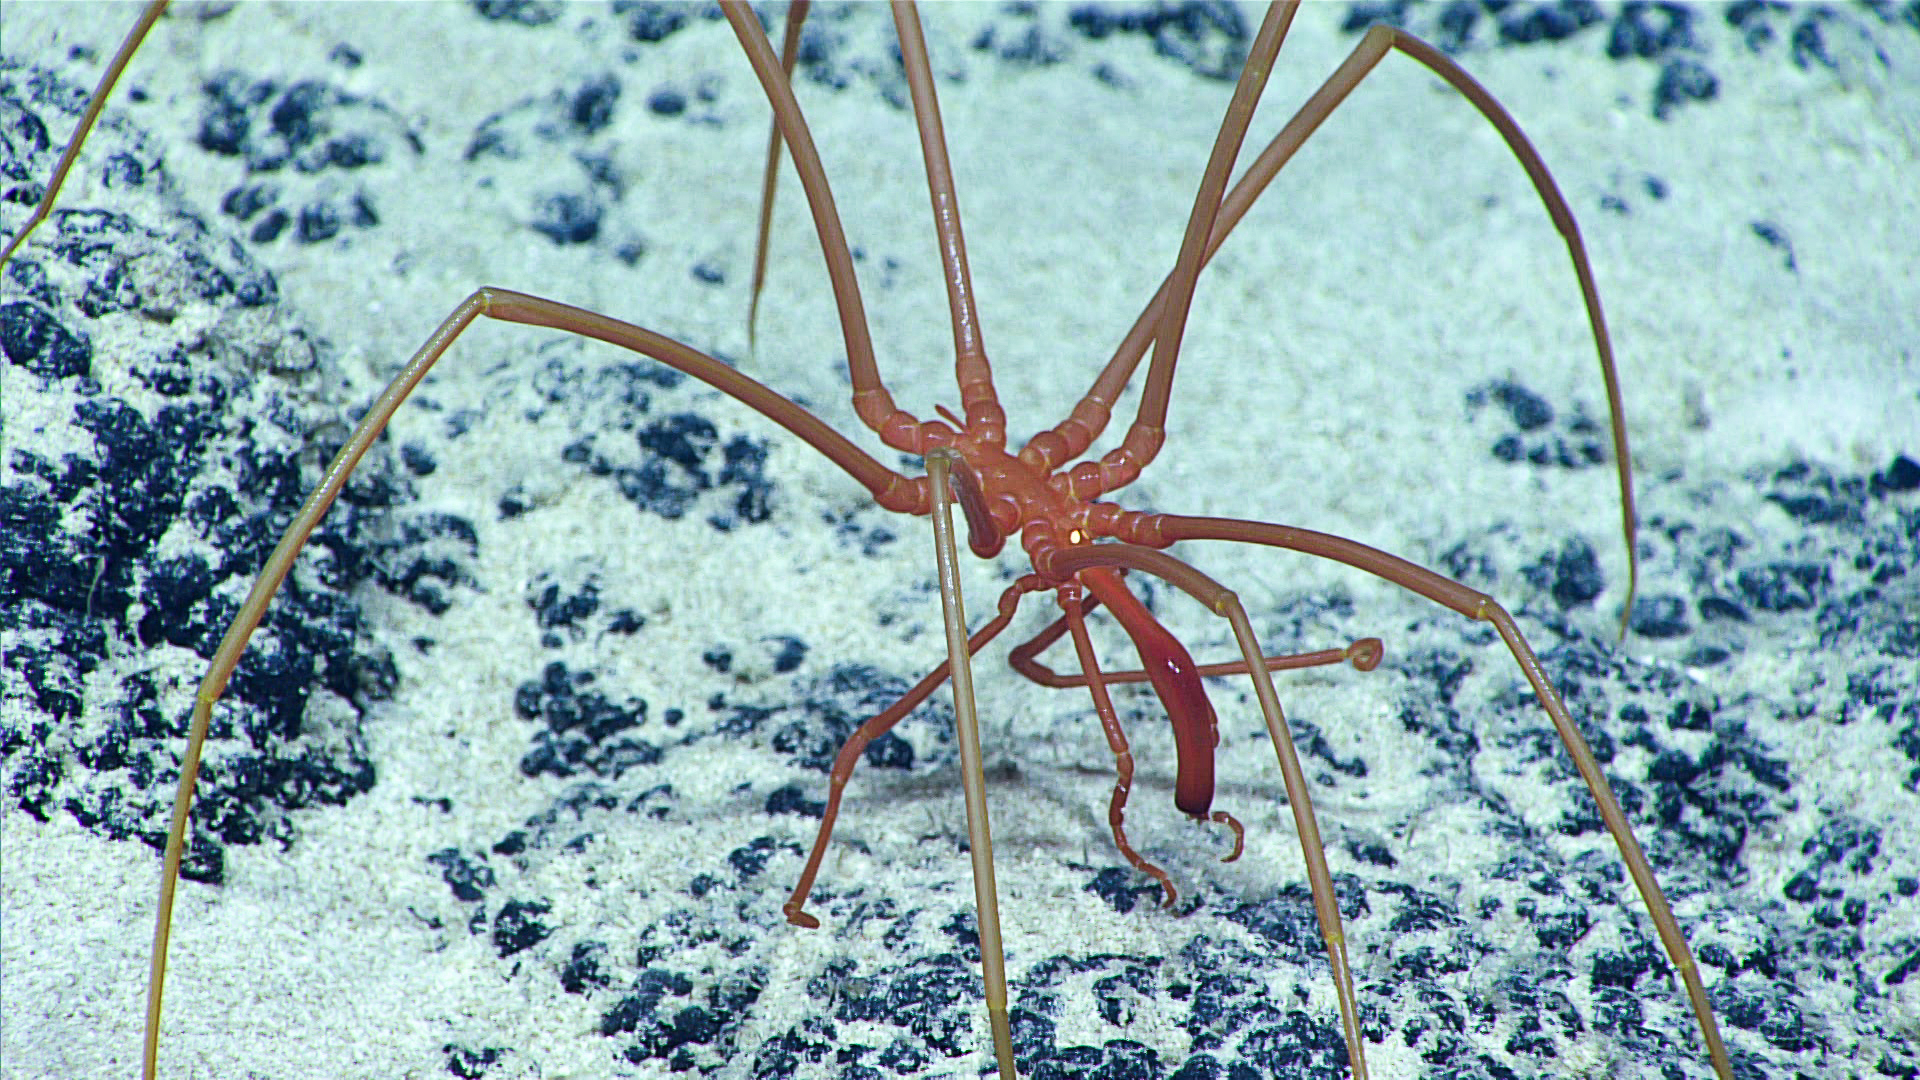 A sea spider. (Image: NOAA)